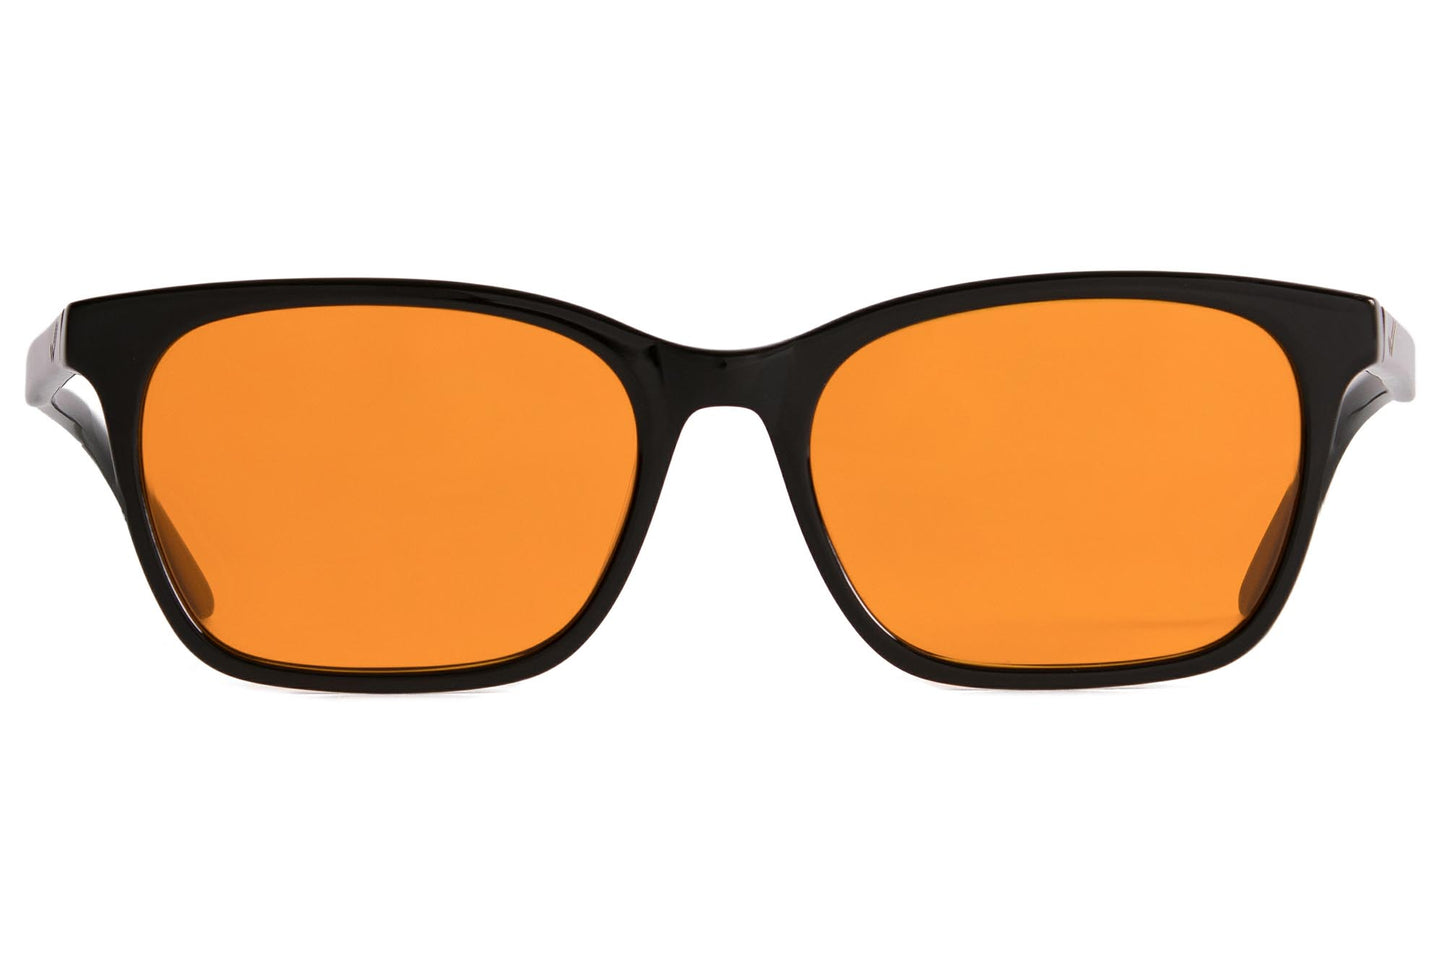 orange blue light blocking glasses for men amber sleep glasses gamer glasses